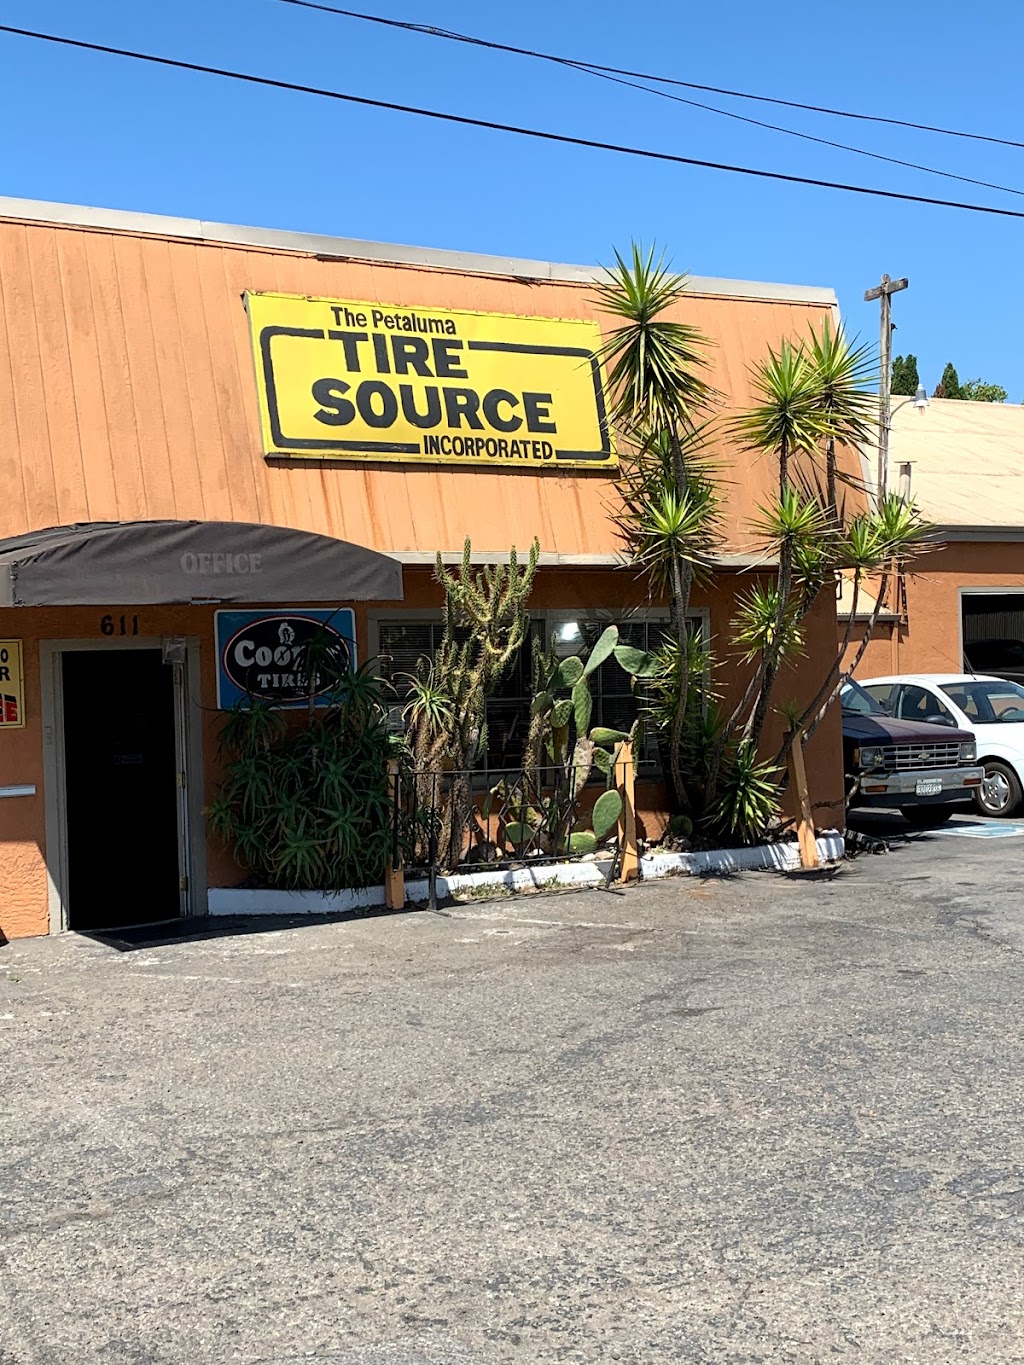 Petaluma Tire Source Inc | 611 Petaluma Blvd N, Petaluma, CA 94952 | Phone: (707) 763-4159